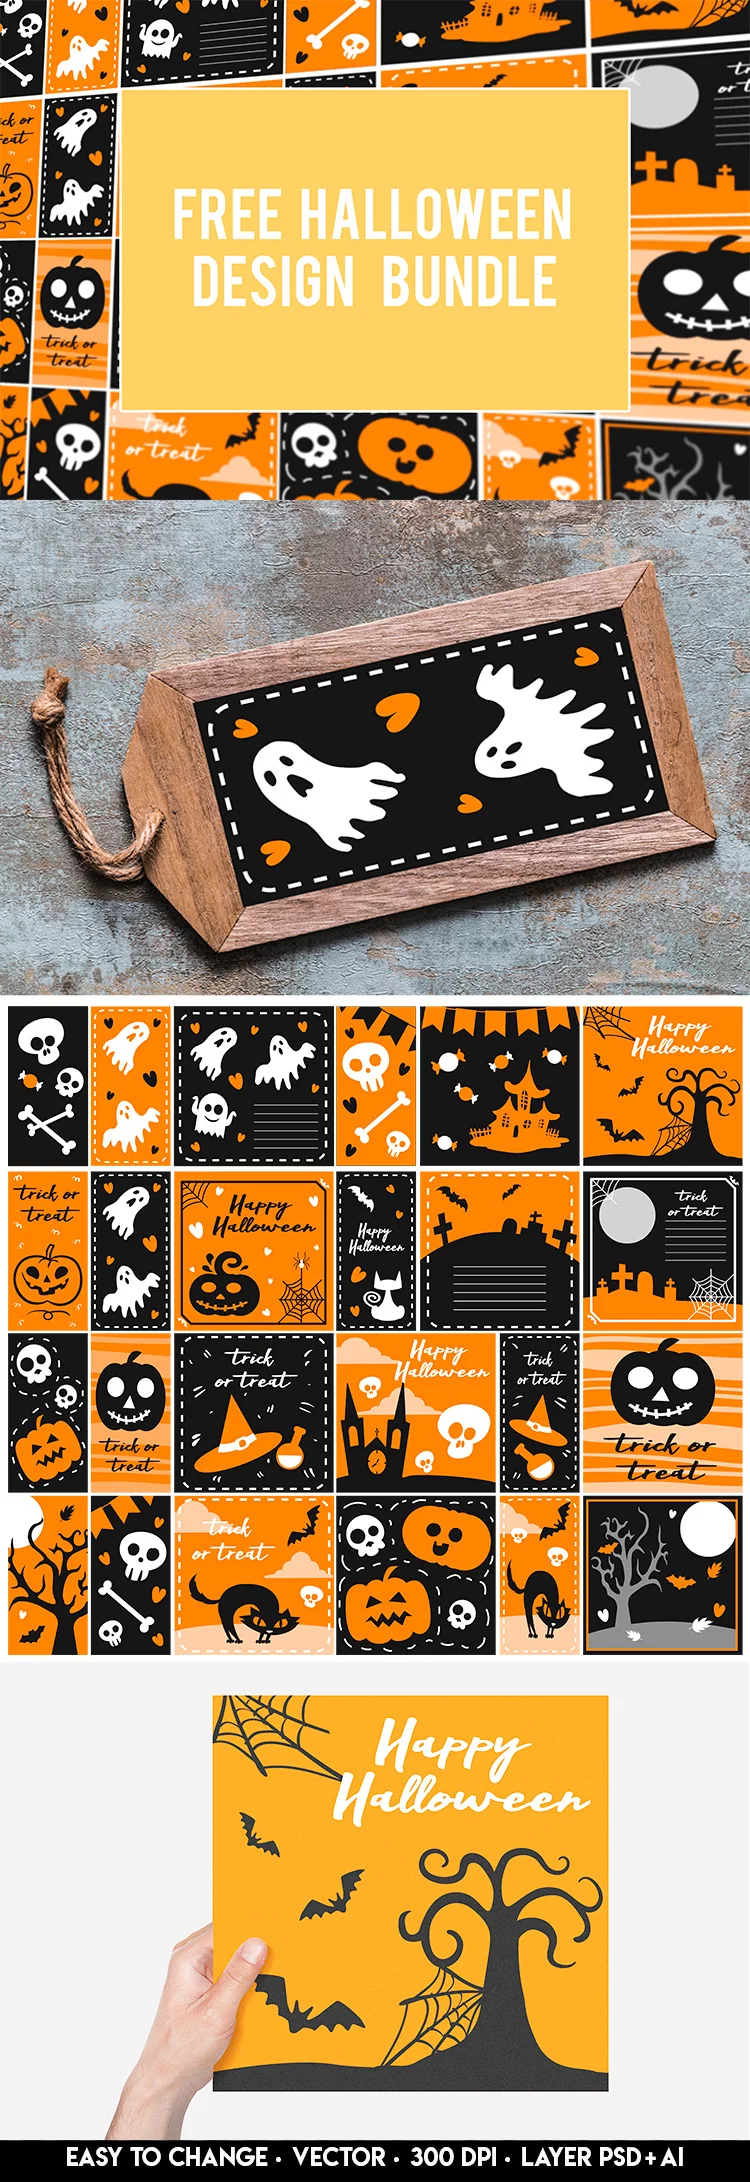 Free Vector Halloween Design Bundle